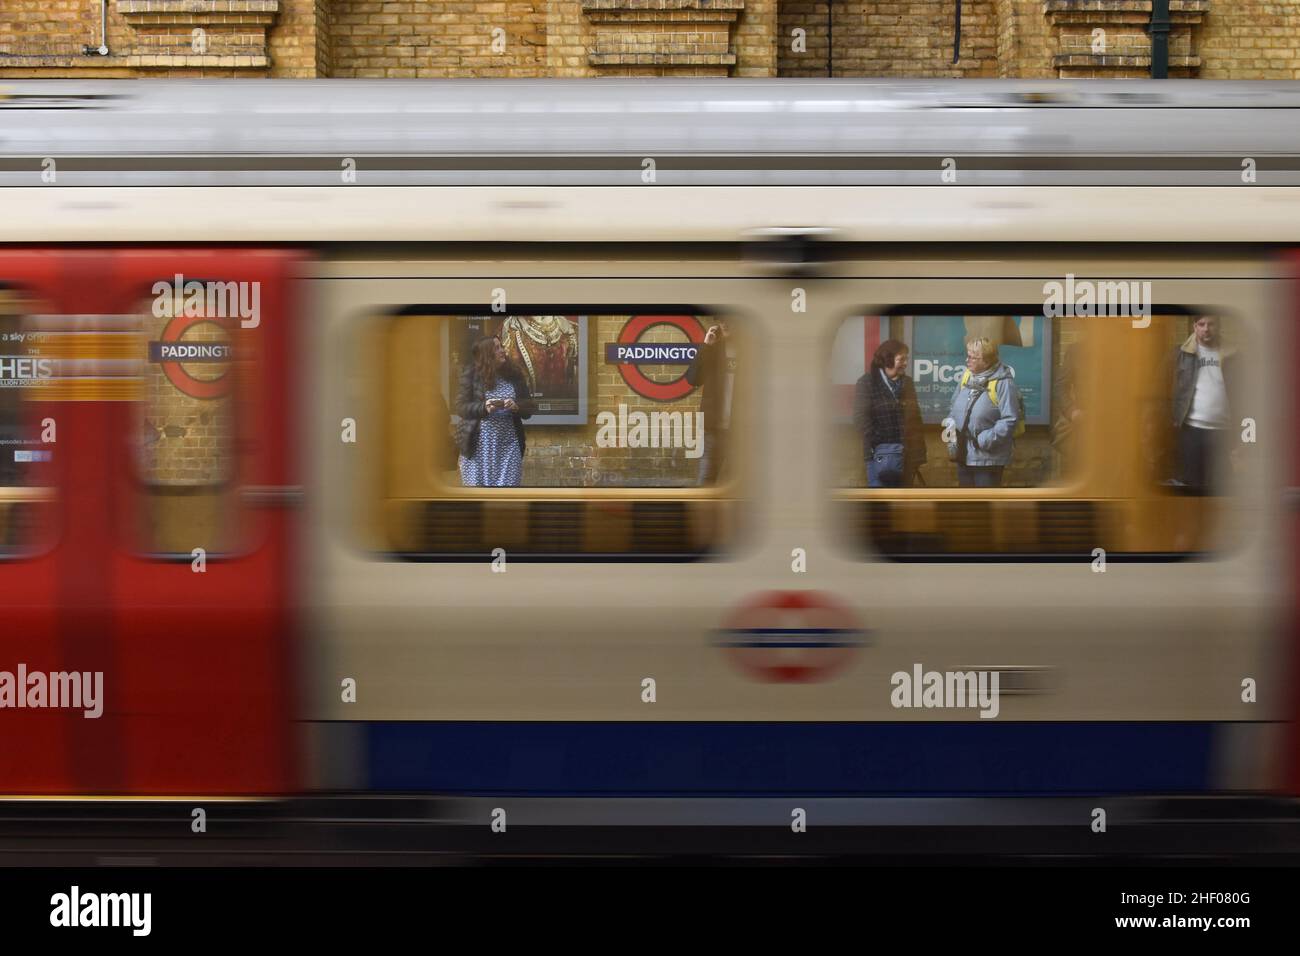 U-Bahn-Station Paddington - District und Circle Line, vorbei an Zug und Passagieren am Bahnsteig in London, Großbritannien. Stockfoto